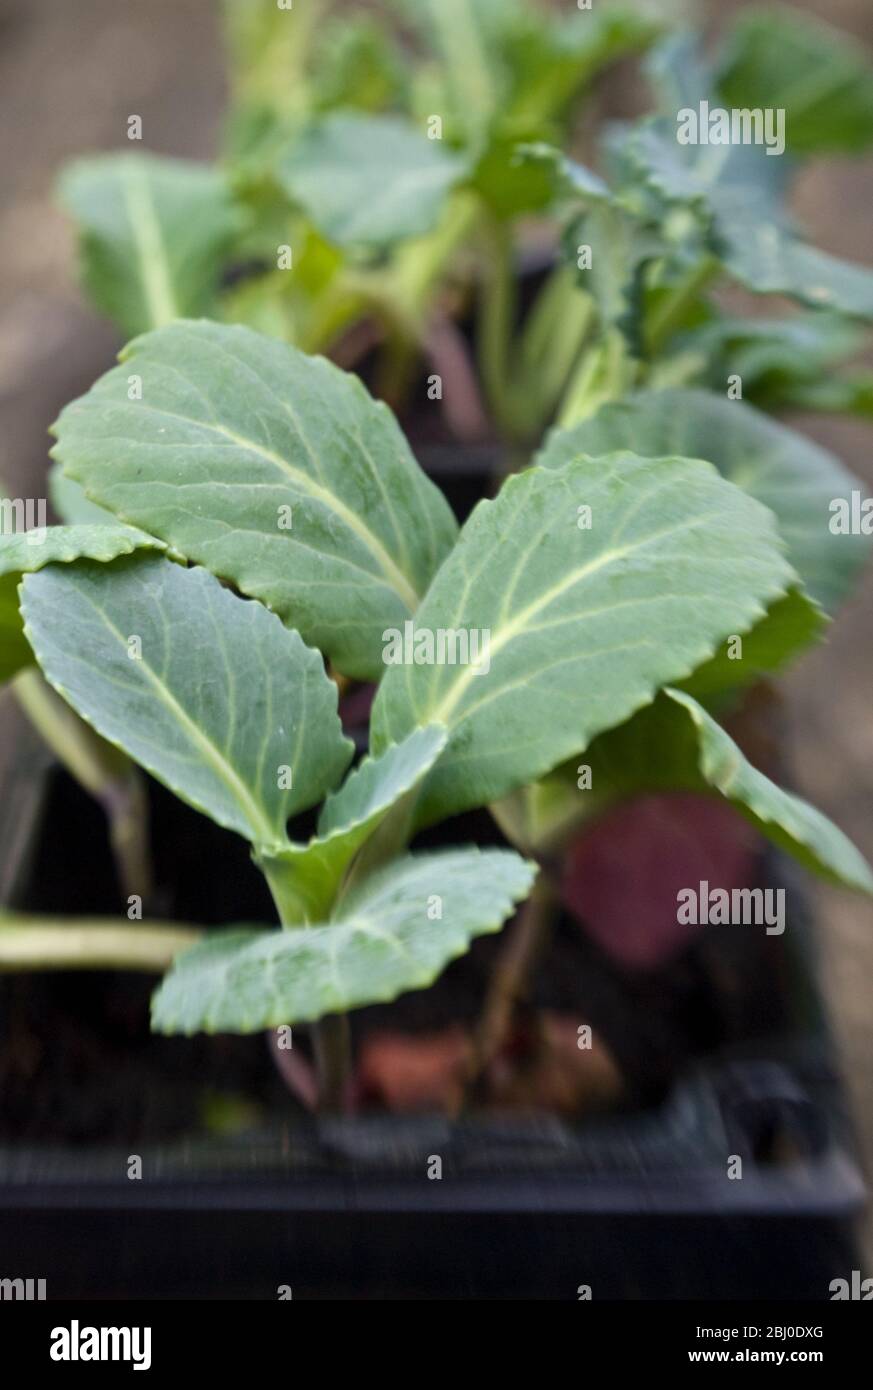 Semina mista di brassica in composto in attesa di essere piantata in appezzamento vegetale. - Foto Stock